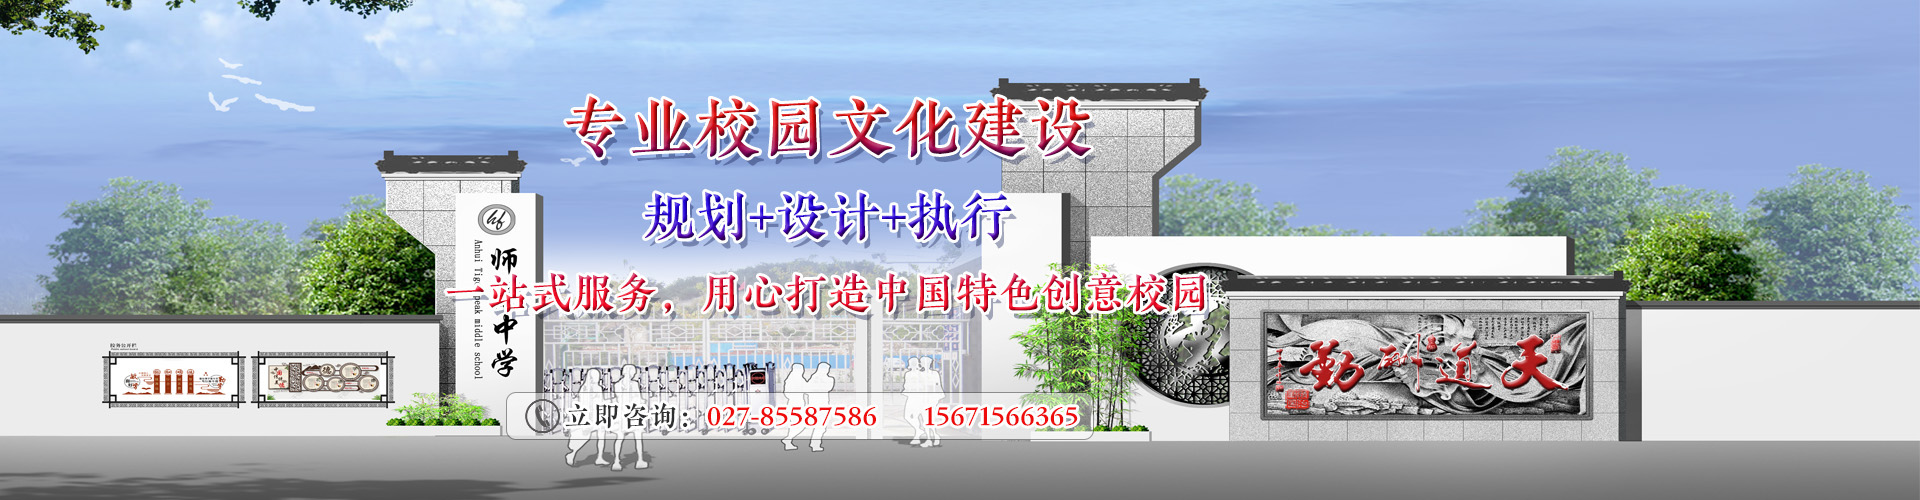 武汉校园文化墙设计-制作-安装一站式服务商